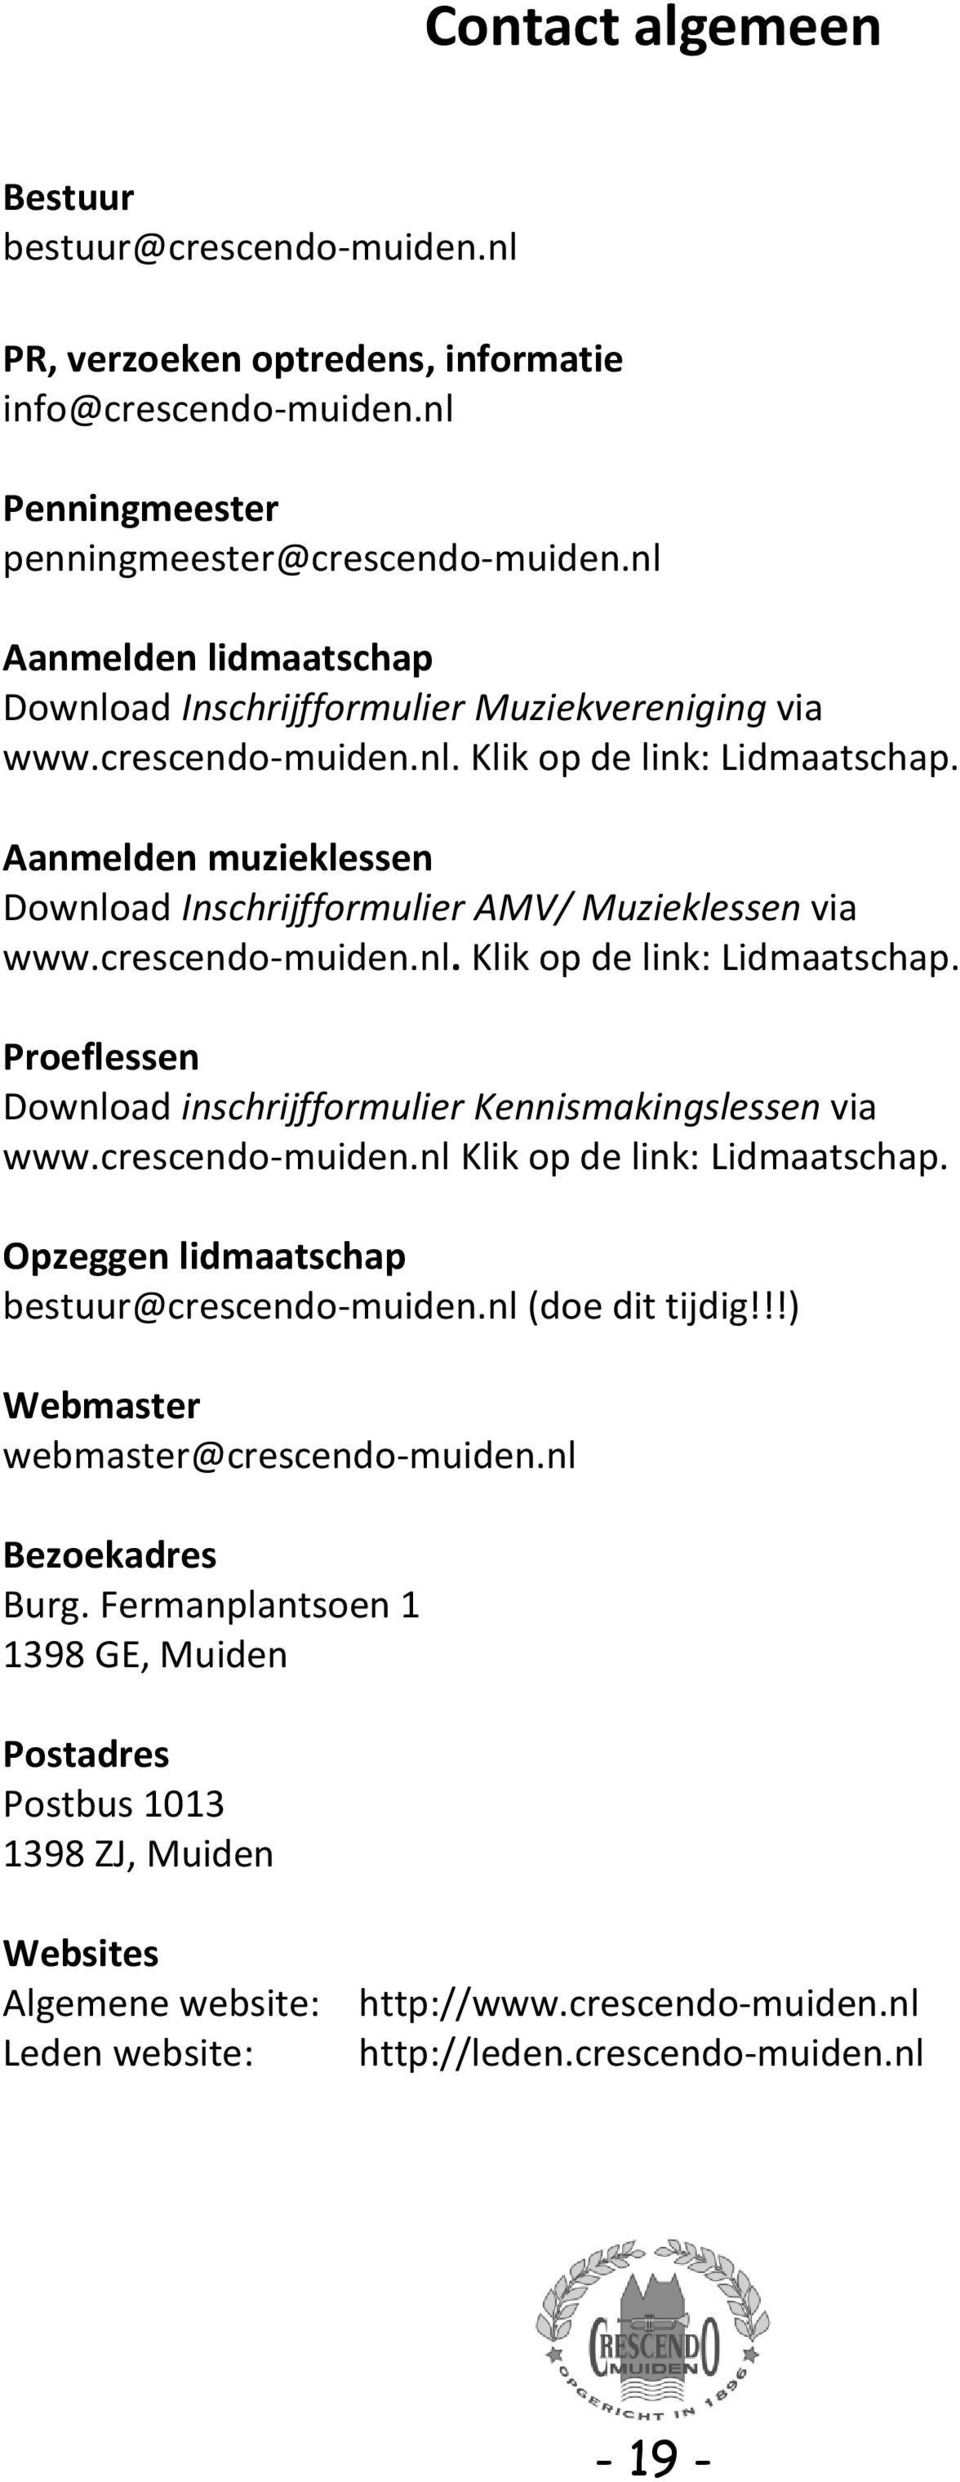 Aanmelden muzieklessen Download Inschrijfformulier AMV/ Muzieklessen via www.crescendo-muiden.nl. Klik op de link: Lidmaatschap. Proeflessen Download inschrijfformulier Kennismakingslessen via www.